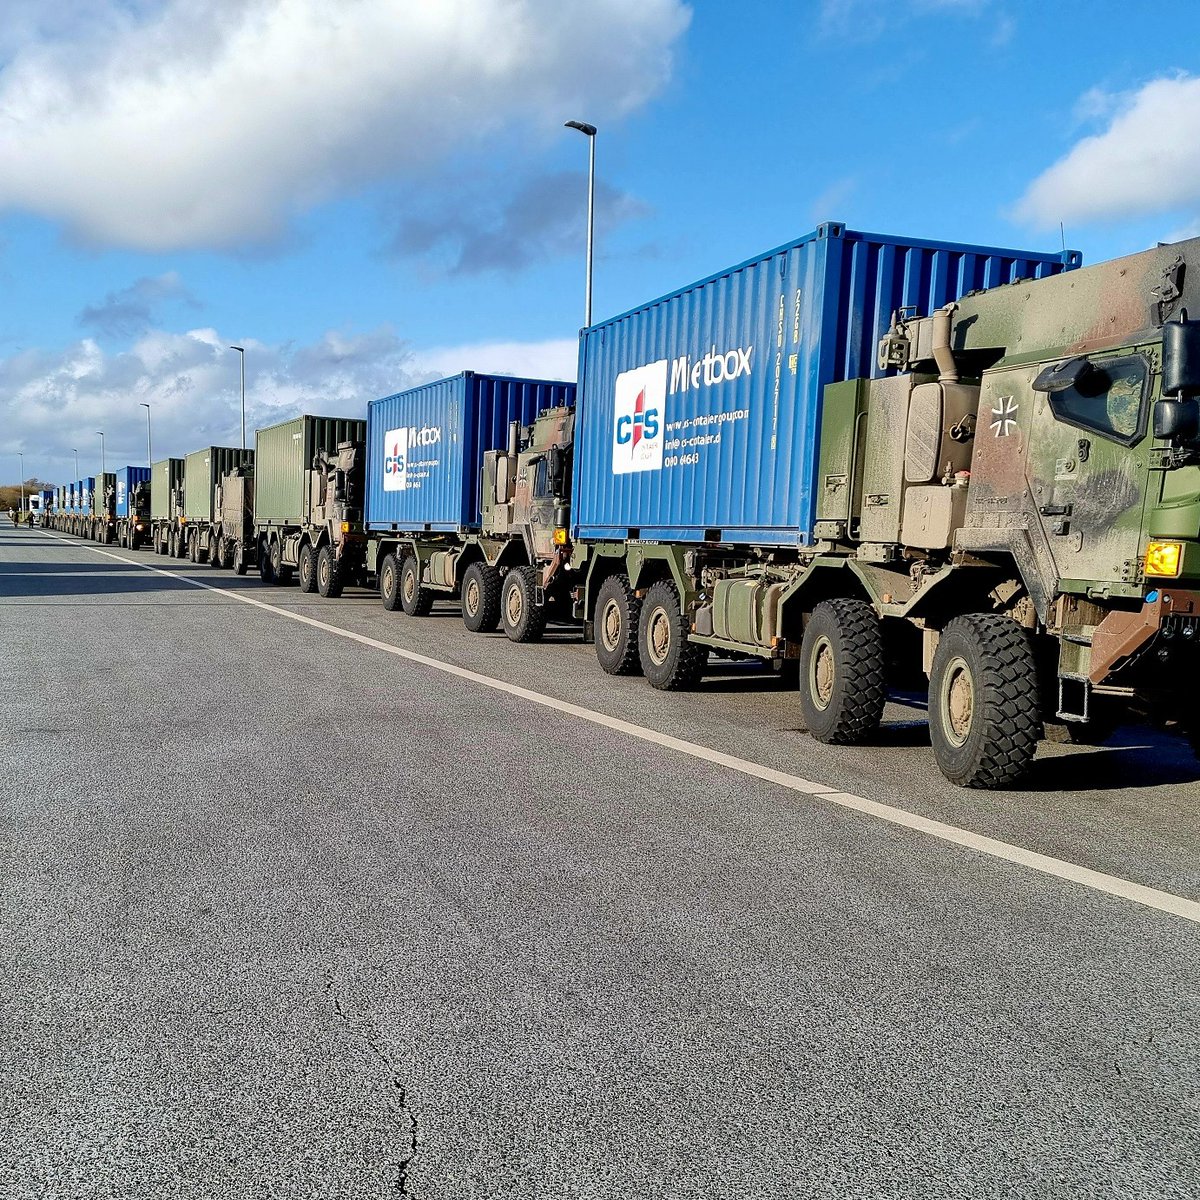 Was verlegt wurde, muss auch rückverlegt werden. Für die #NATO Übung #nordicresponse24 haben Logistiker der #Bundeswehr Waffen & Material knapp 6000 km weit transportiert. Es ging per🚚 von Deutschland 🇩🇪, durch Dänemark 🇩🇰 & Schweden 🇸🇪 bis nach Norwegen 🇳🇴 & zurück. #QUAD24.